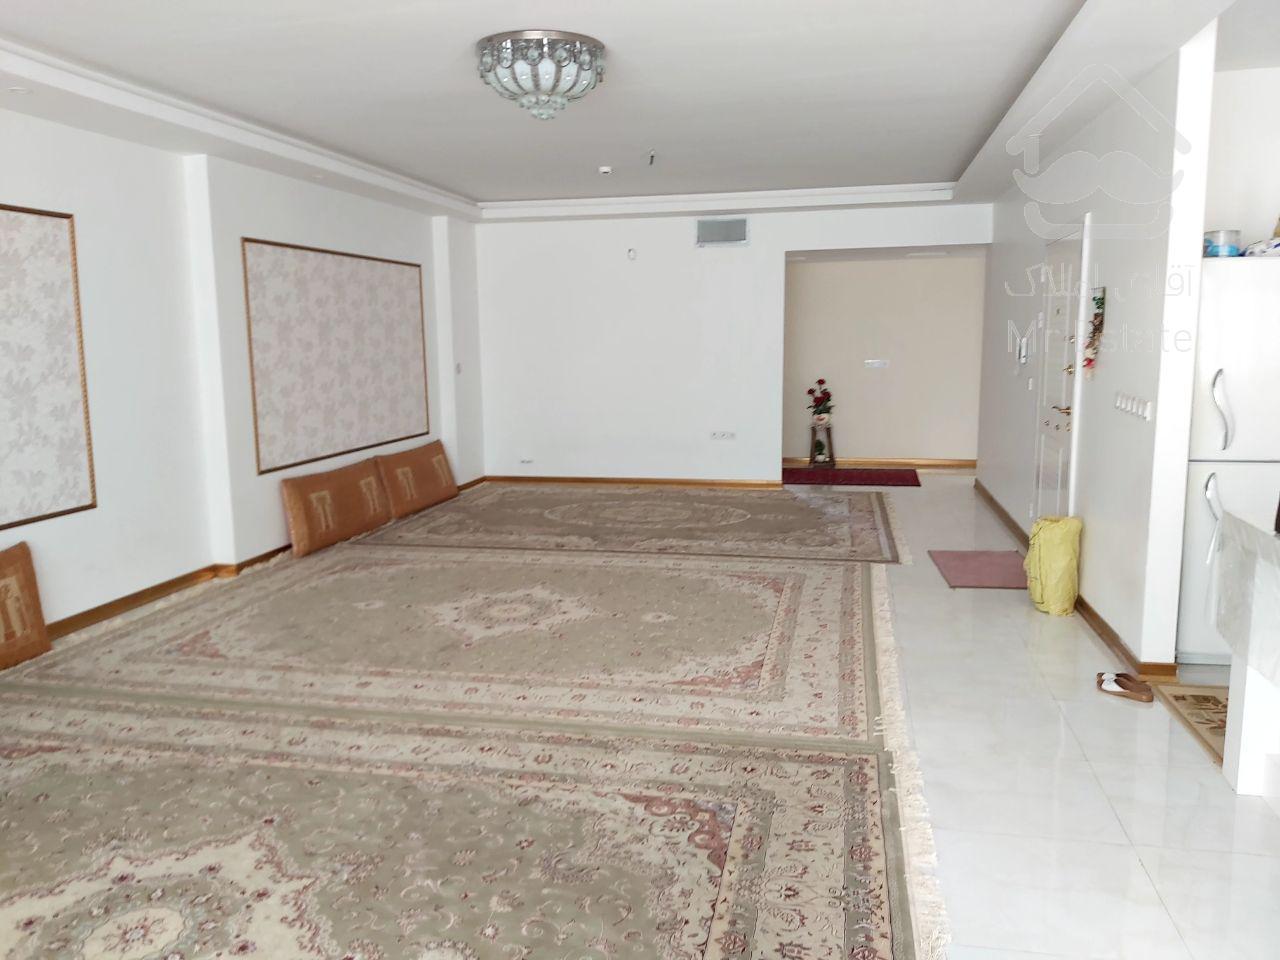 آپارتمان فروشی در امیریه۳ و معاوضه با امامت